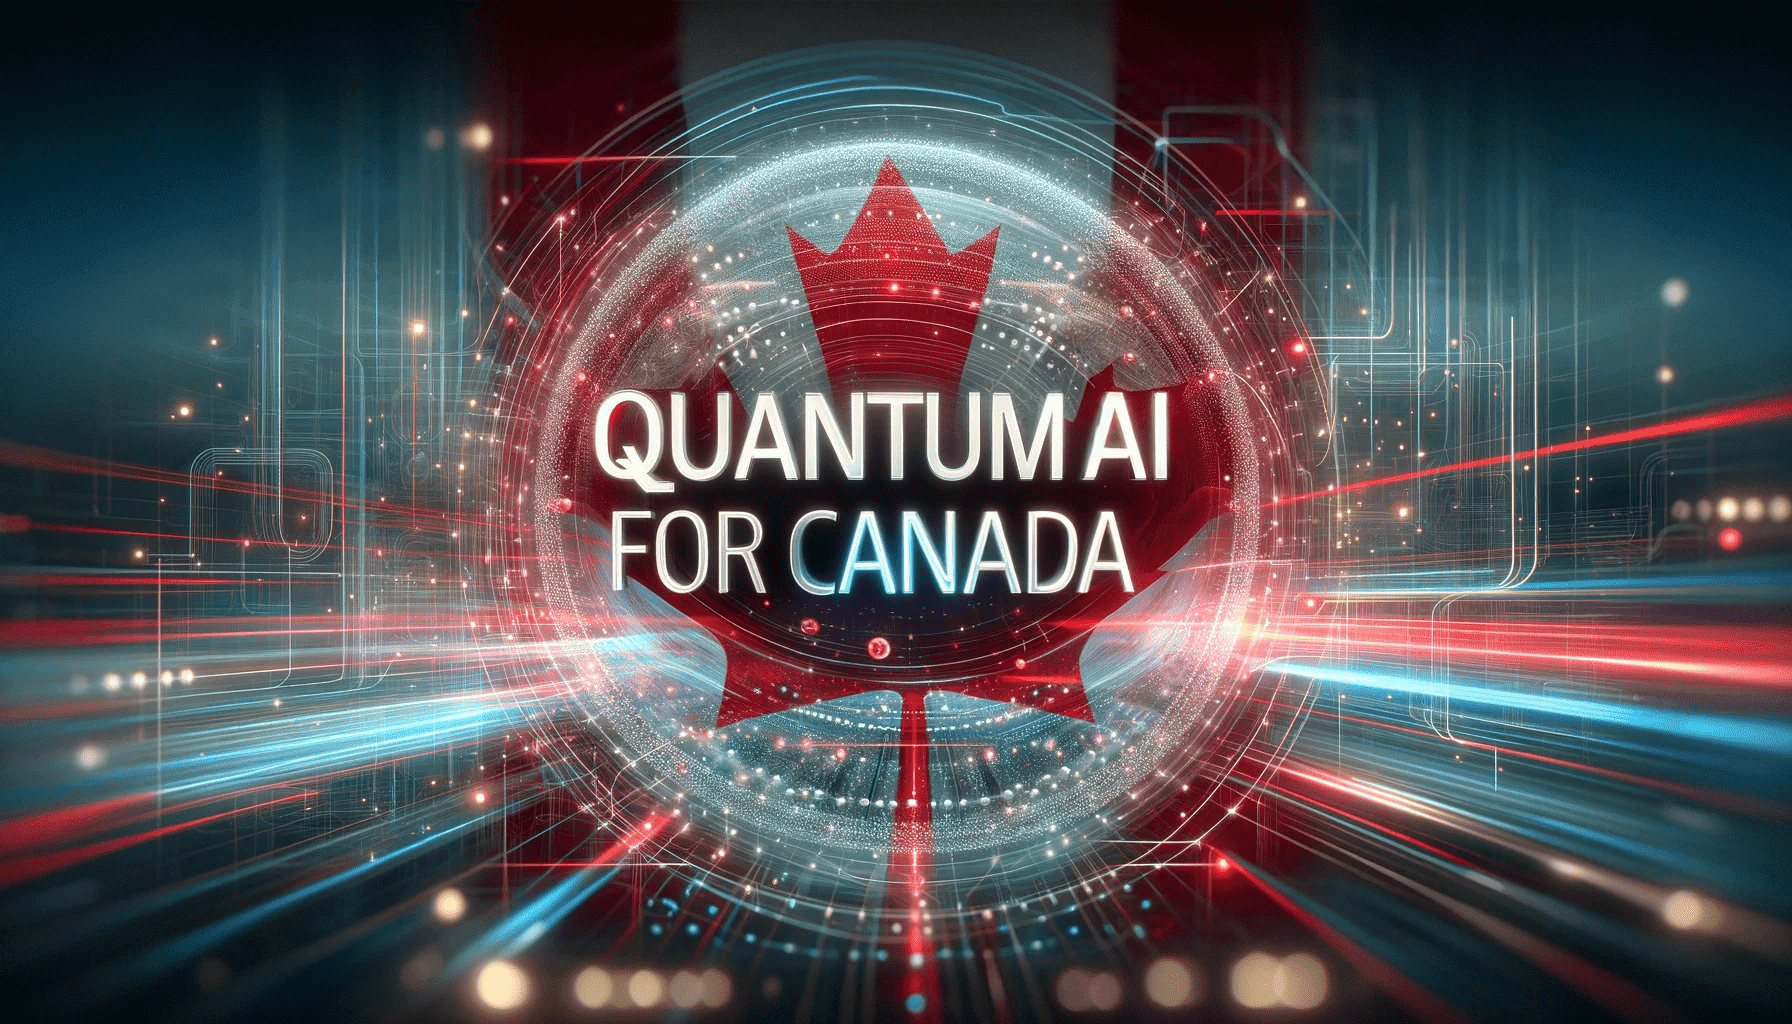 Quantum AI for Canada